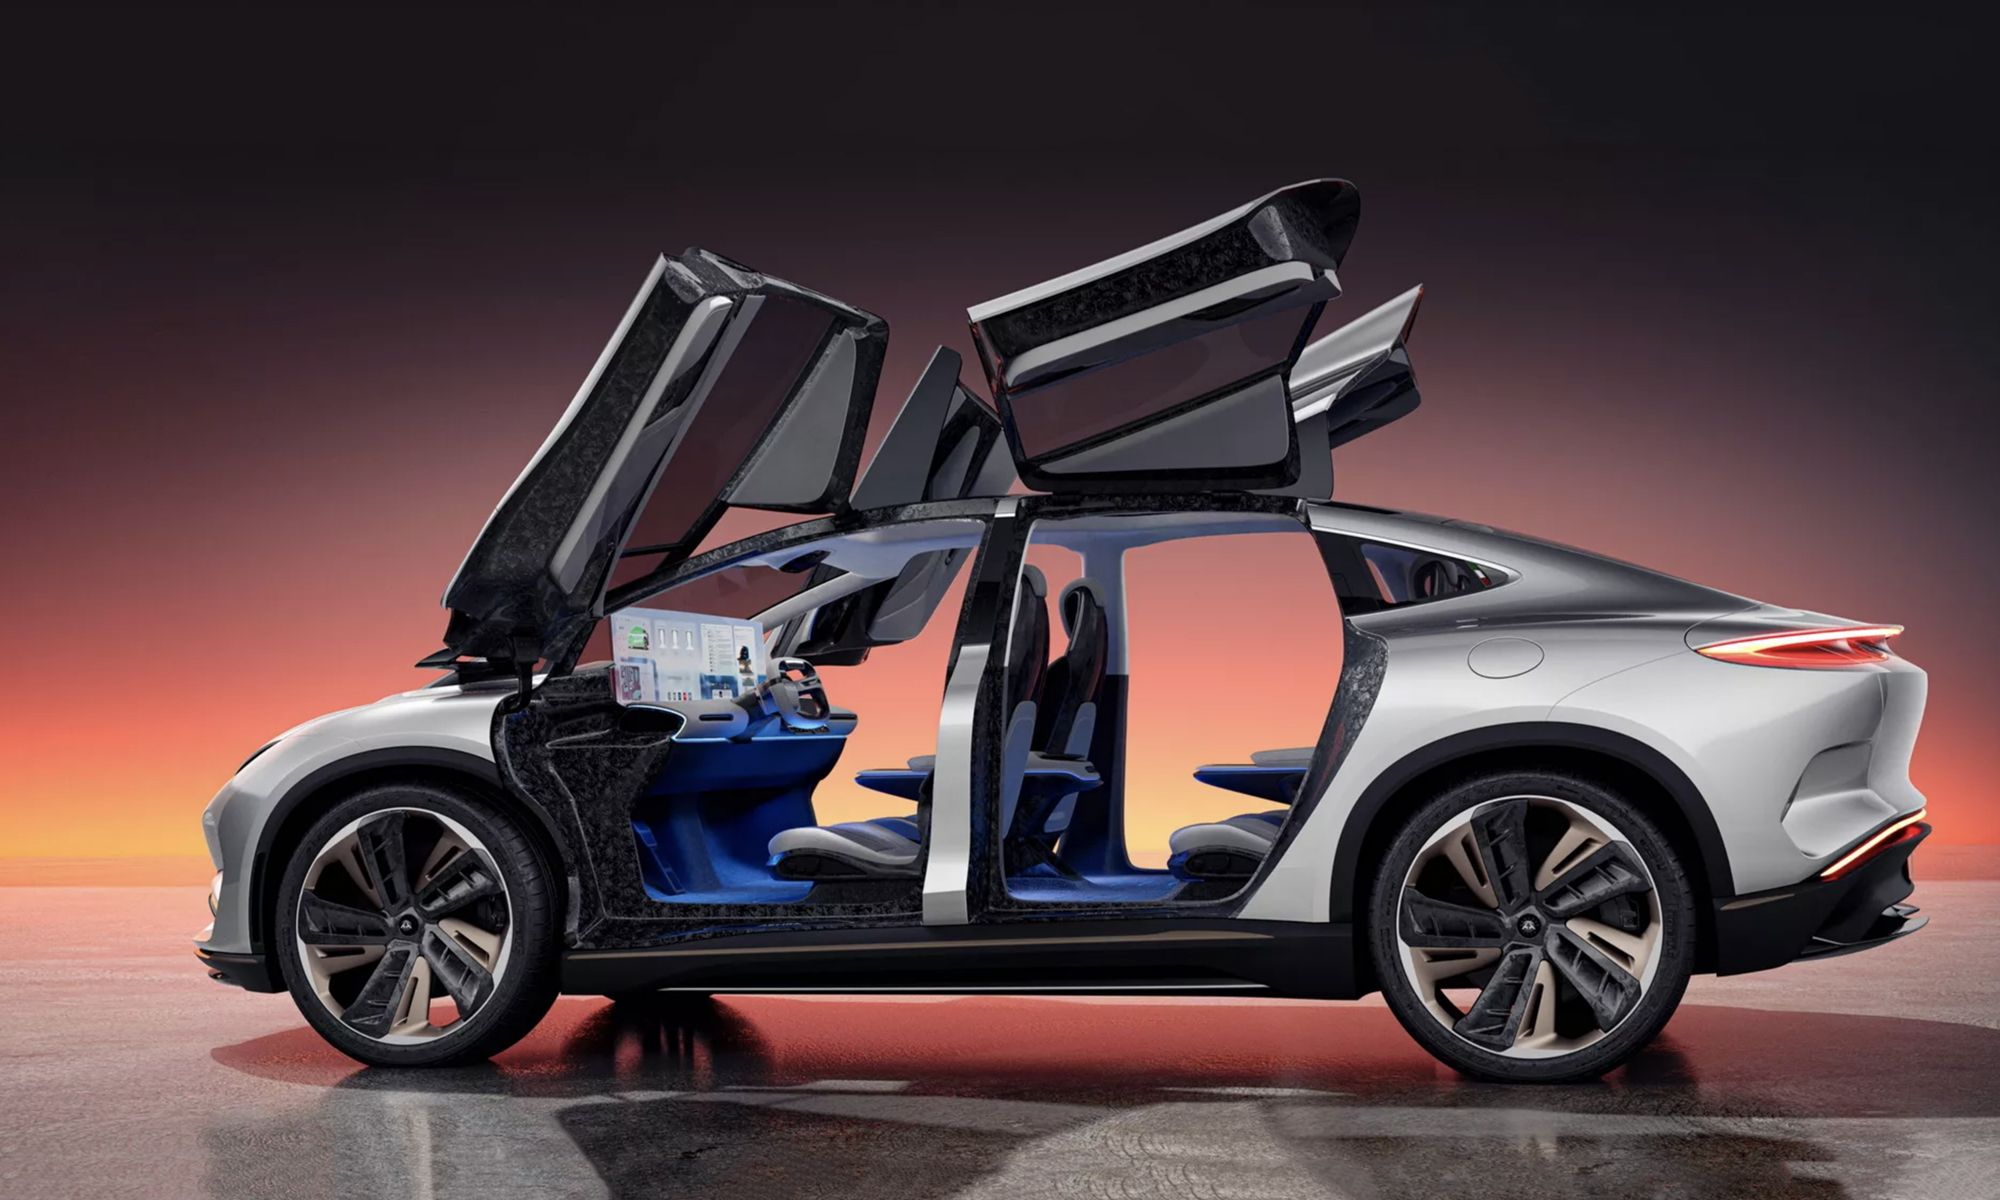 El Aehra SUV llegará al mercado en 2025 con una diseño espectacular y una avanzada mecánica eléctrica.